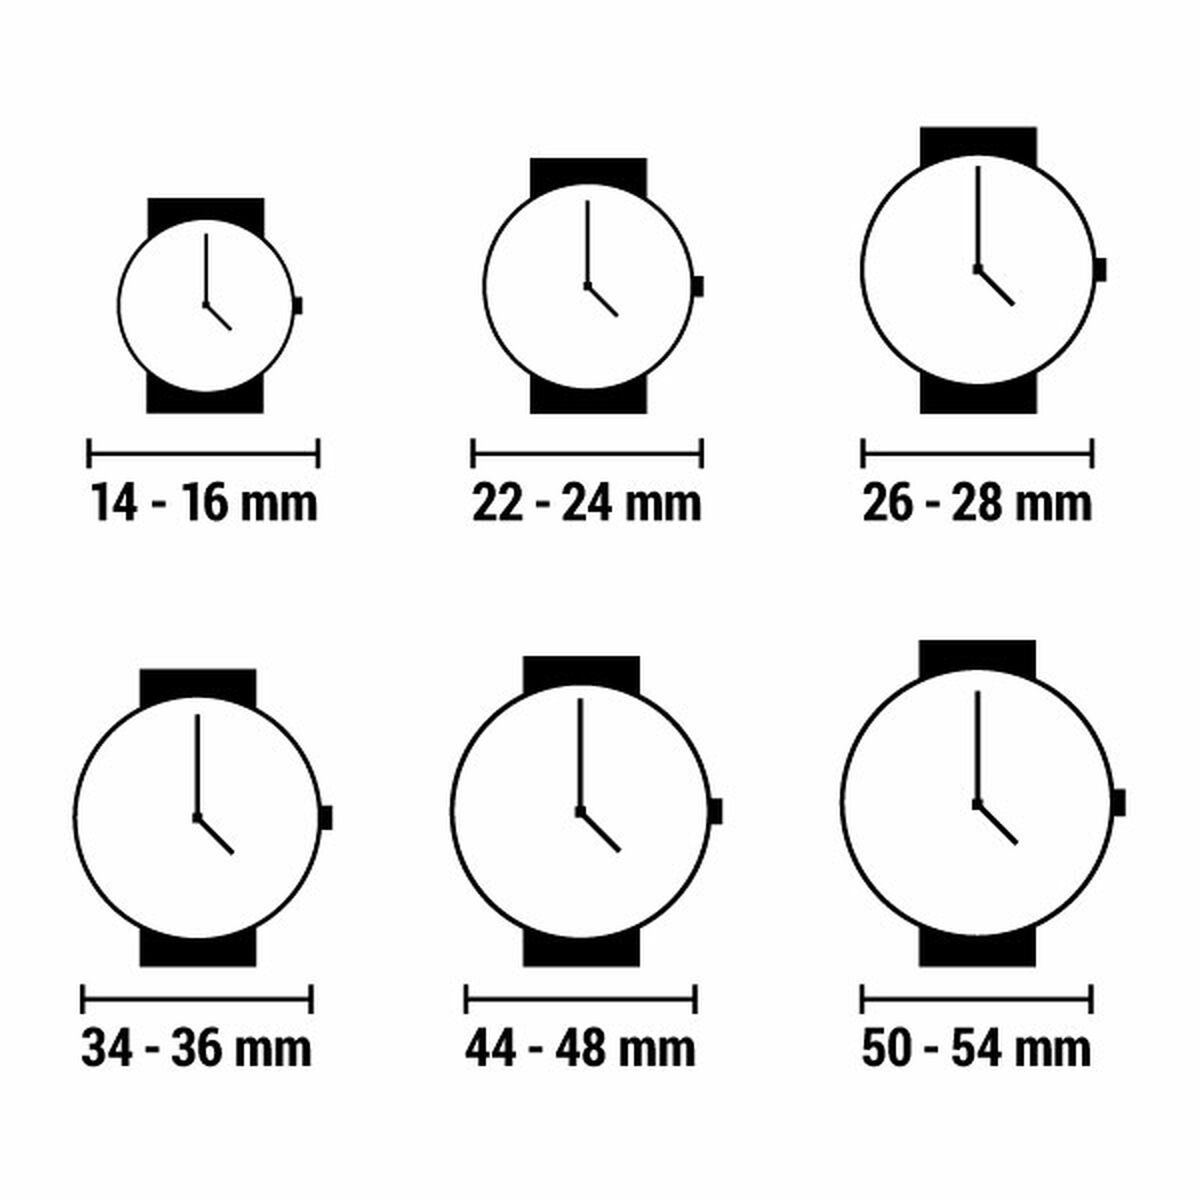 Horloge Heren Sector R3273776002 (Ø 43 mm)